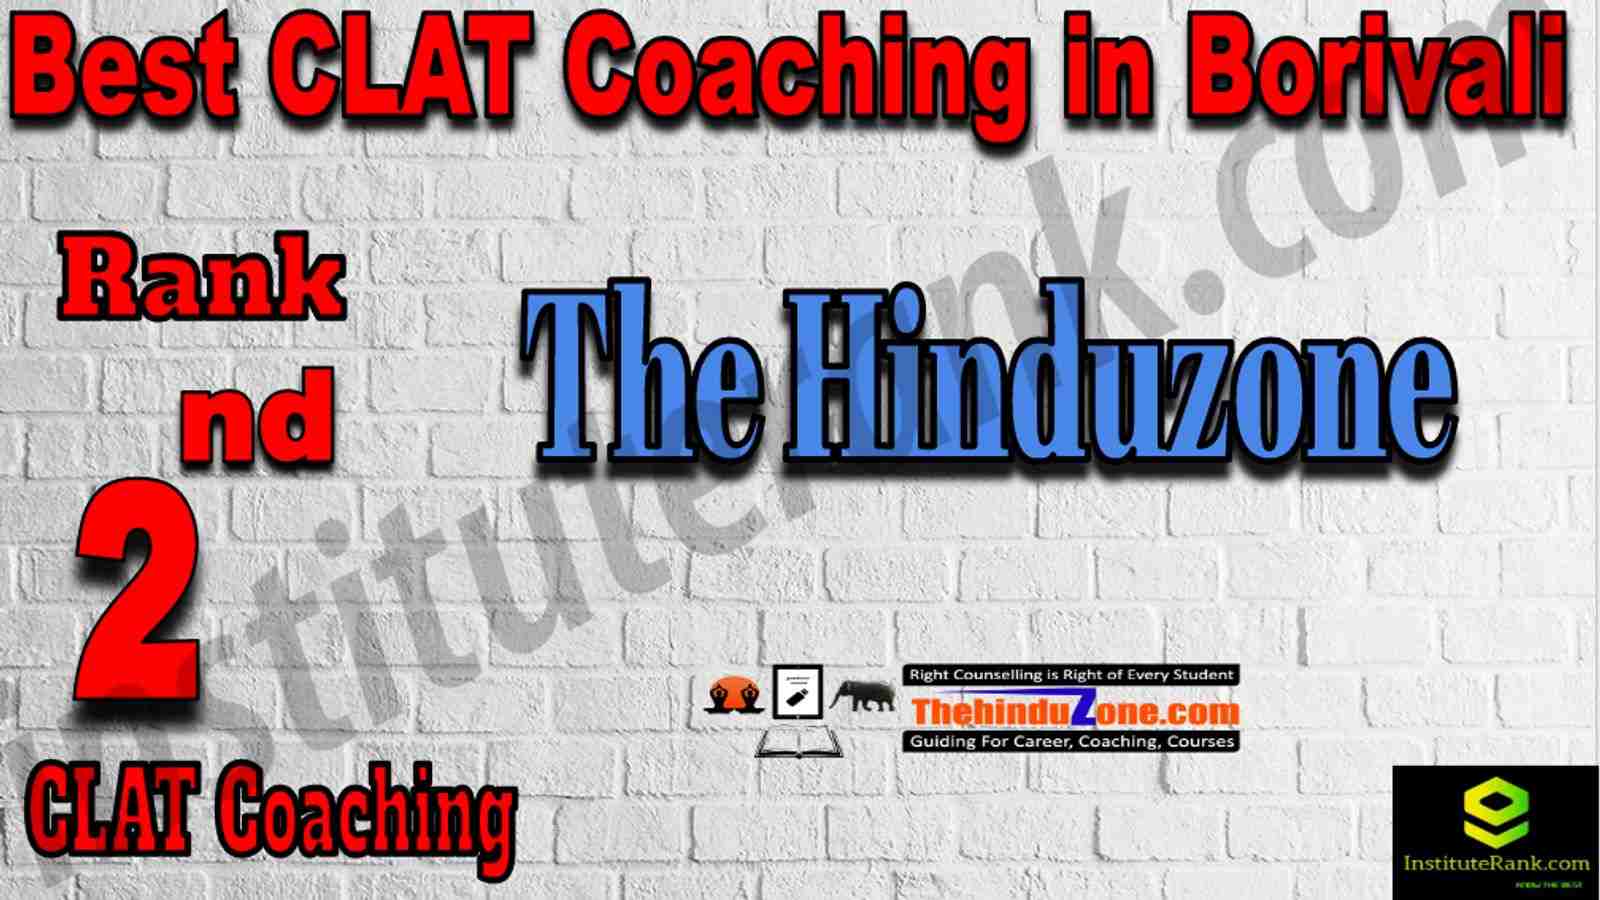 2nd Best CLAT Coaching in Borivali